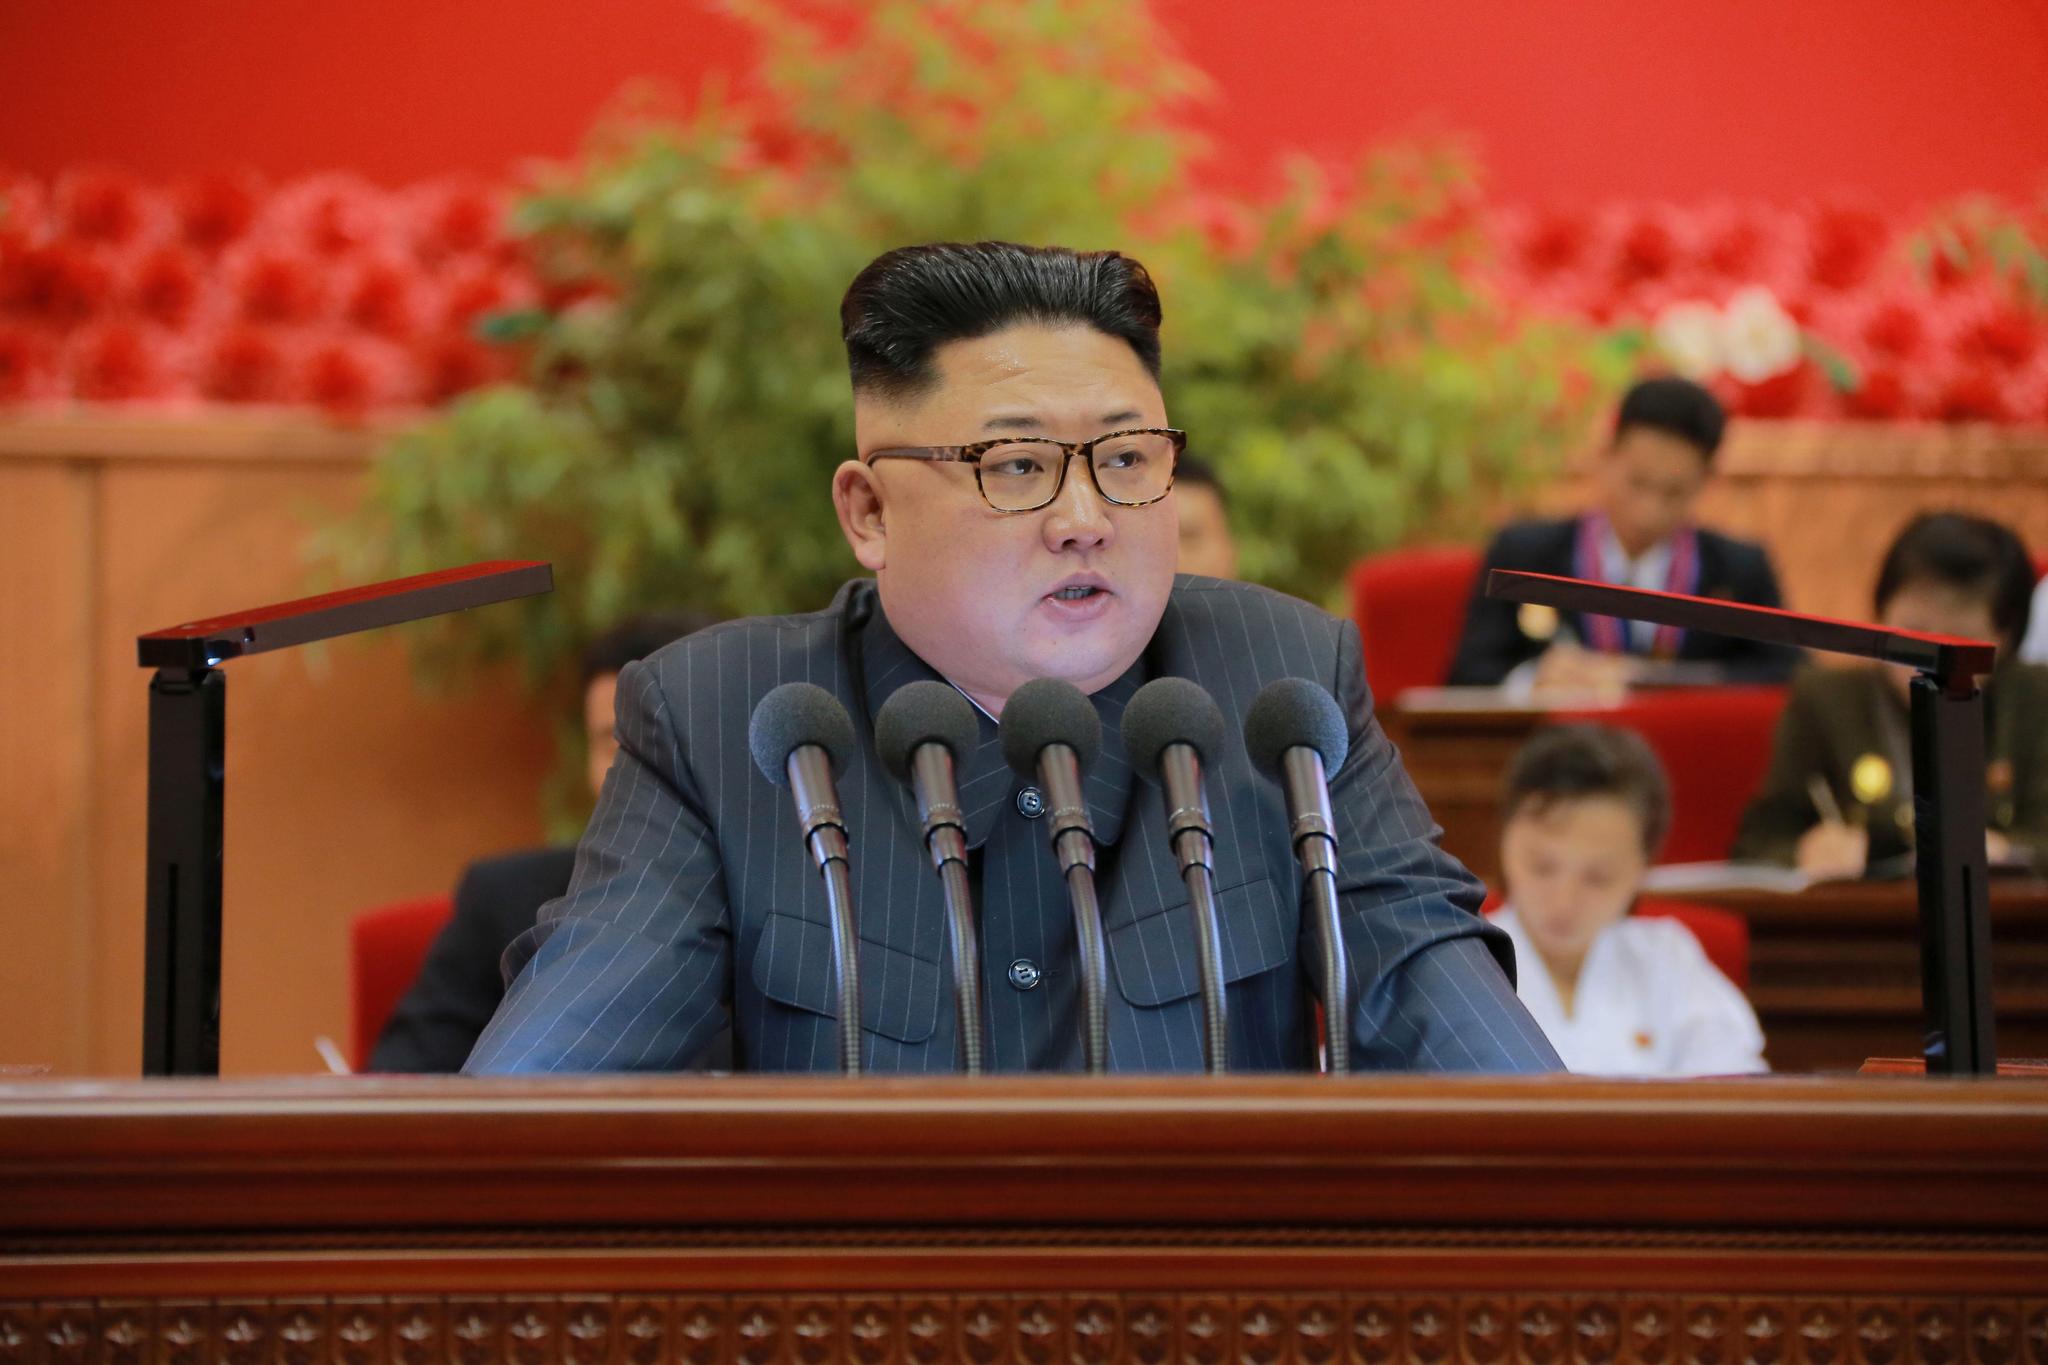 Nord-Koreas leder Kim Jong-un har flere ganger truet med å angripe USA og Sør-Korea med atomvåpen hvis landets suverenitet blir truet.